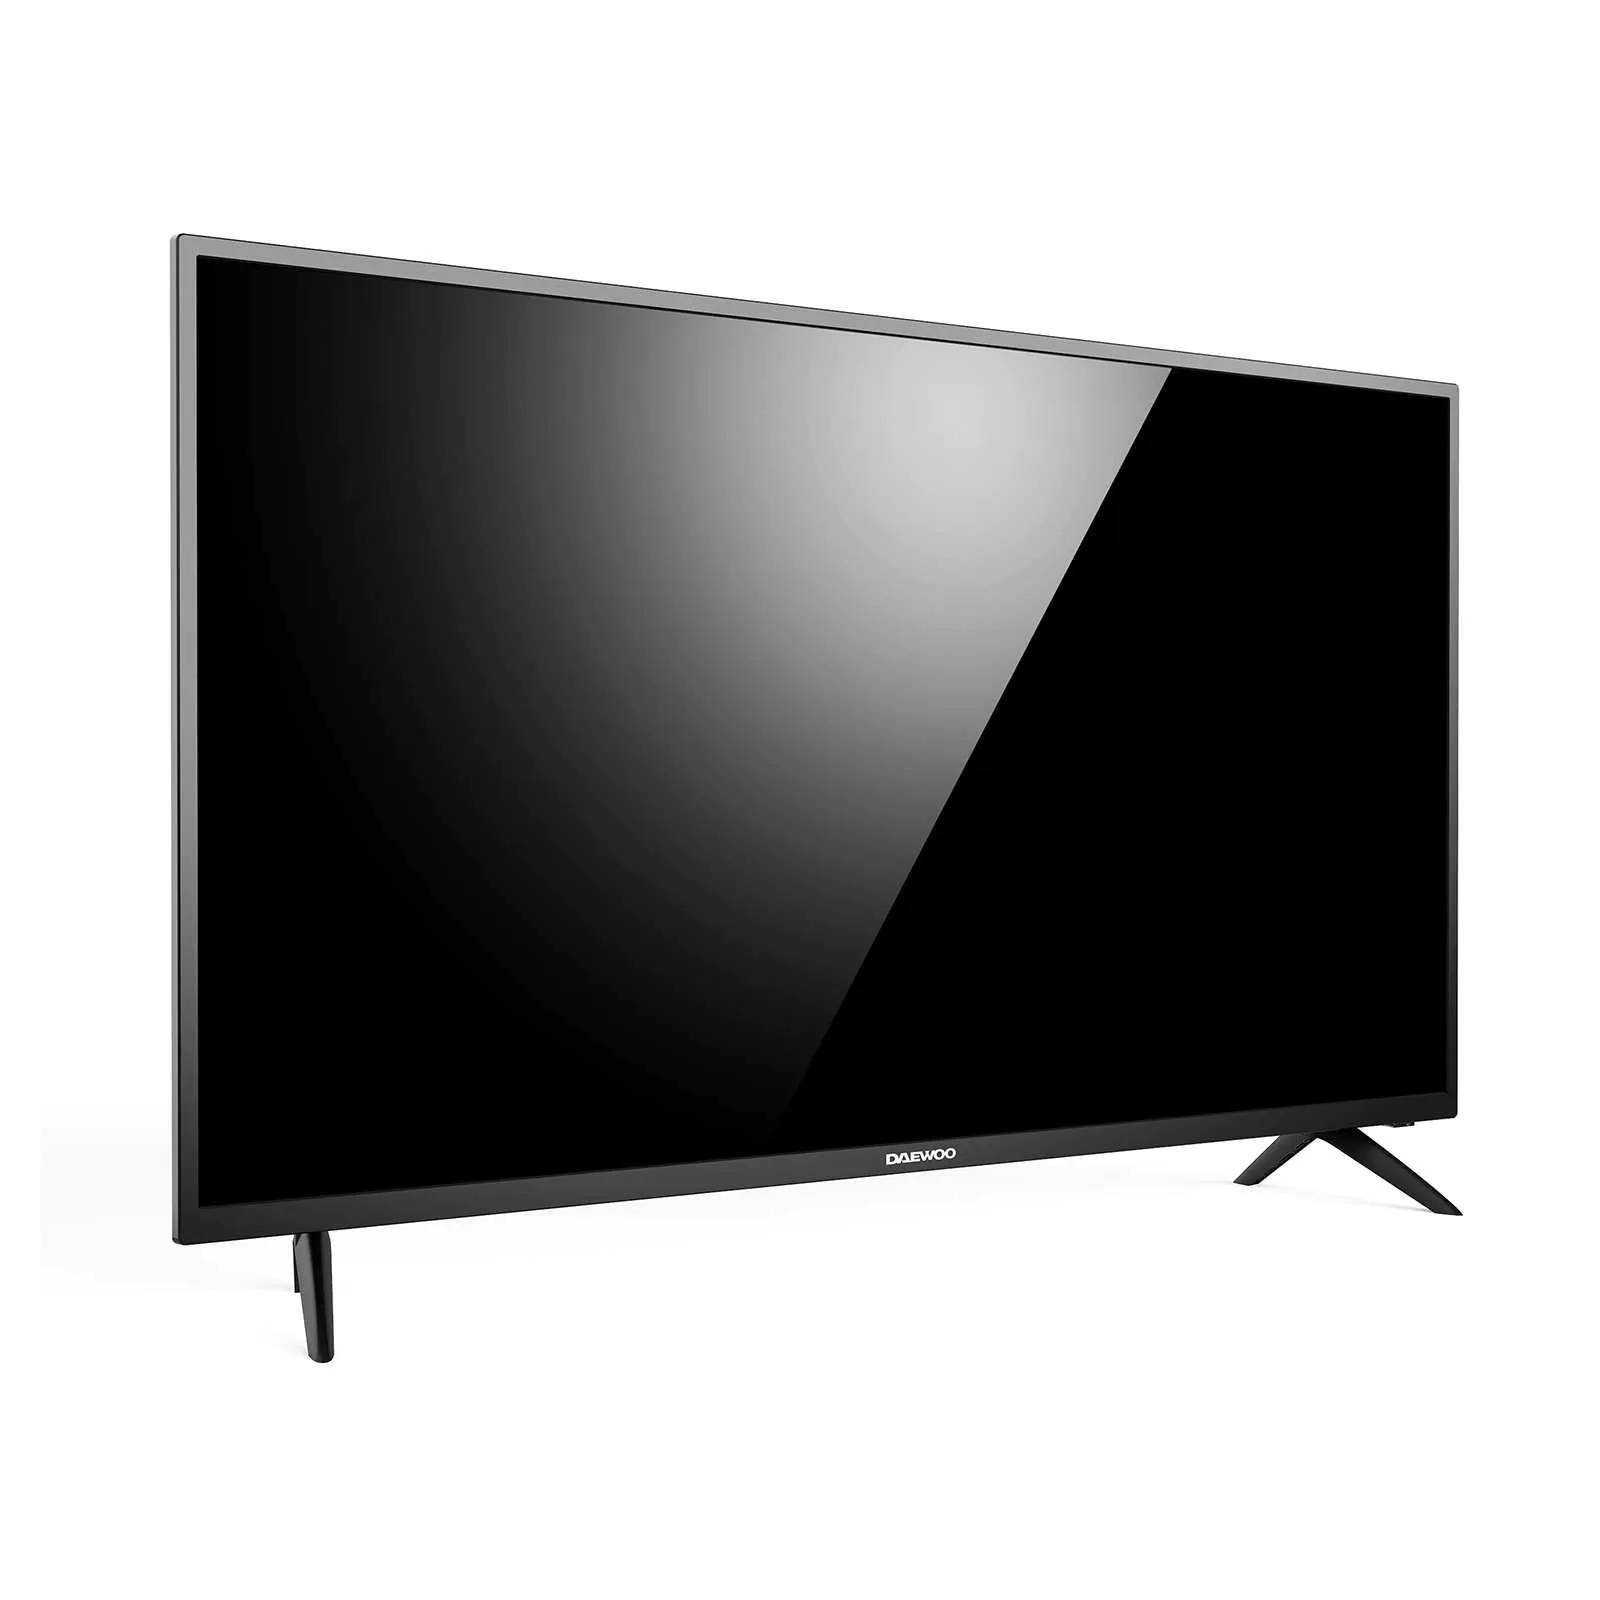 Televisor Daewoo con pantalla LED de 24 pulgadas, imagen HD TV.